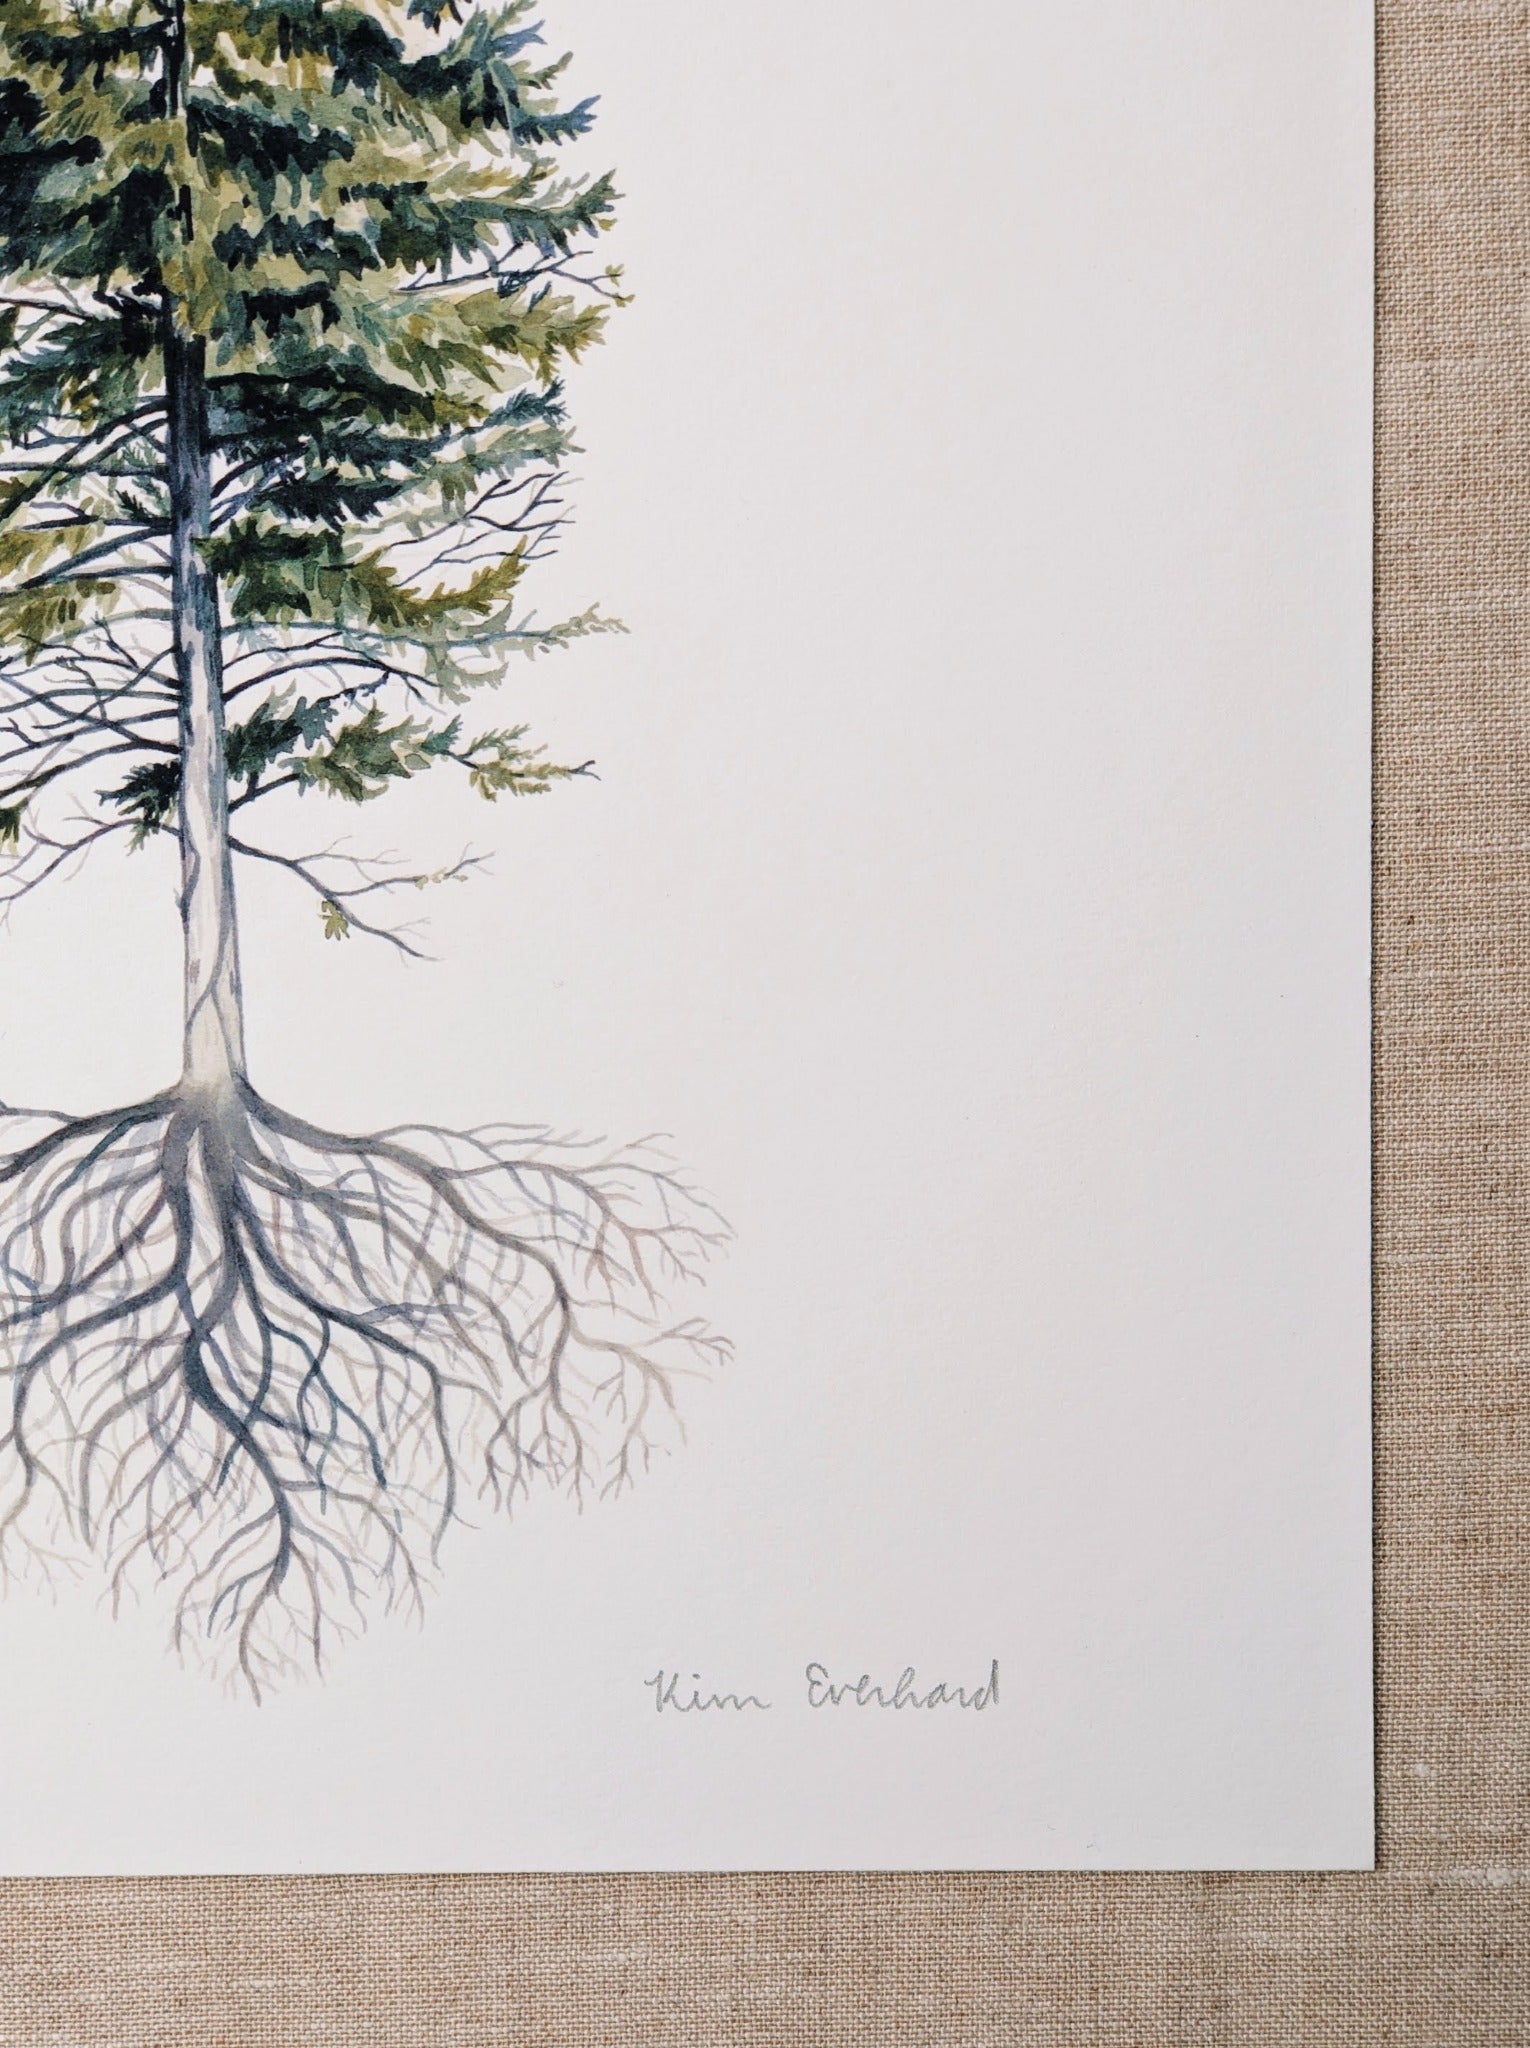 Rooted Pine Tree - Art Print - Kim Everhard Art